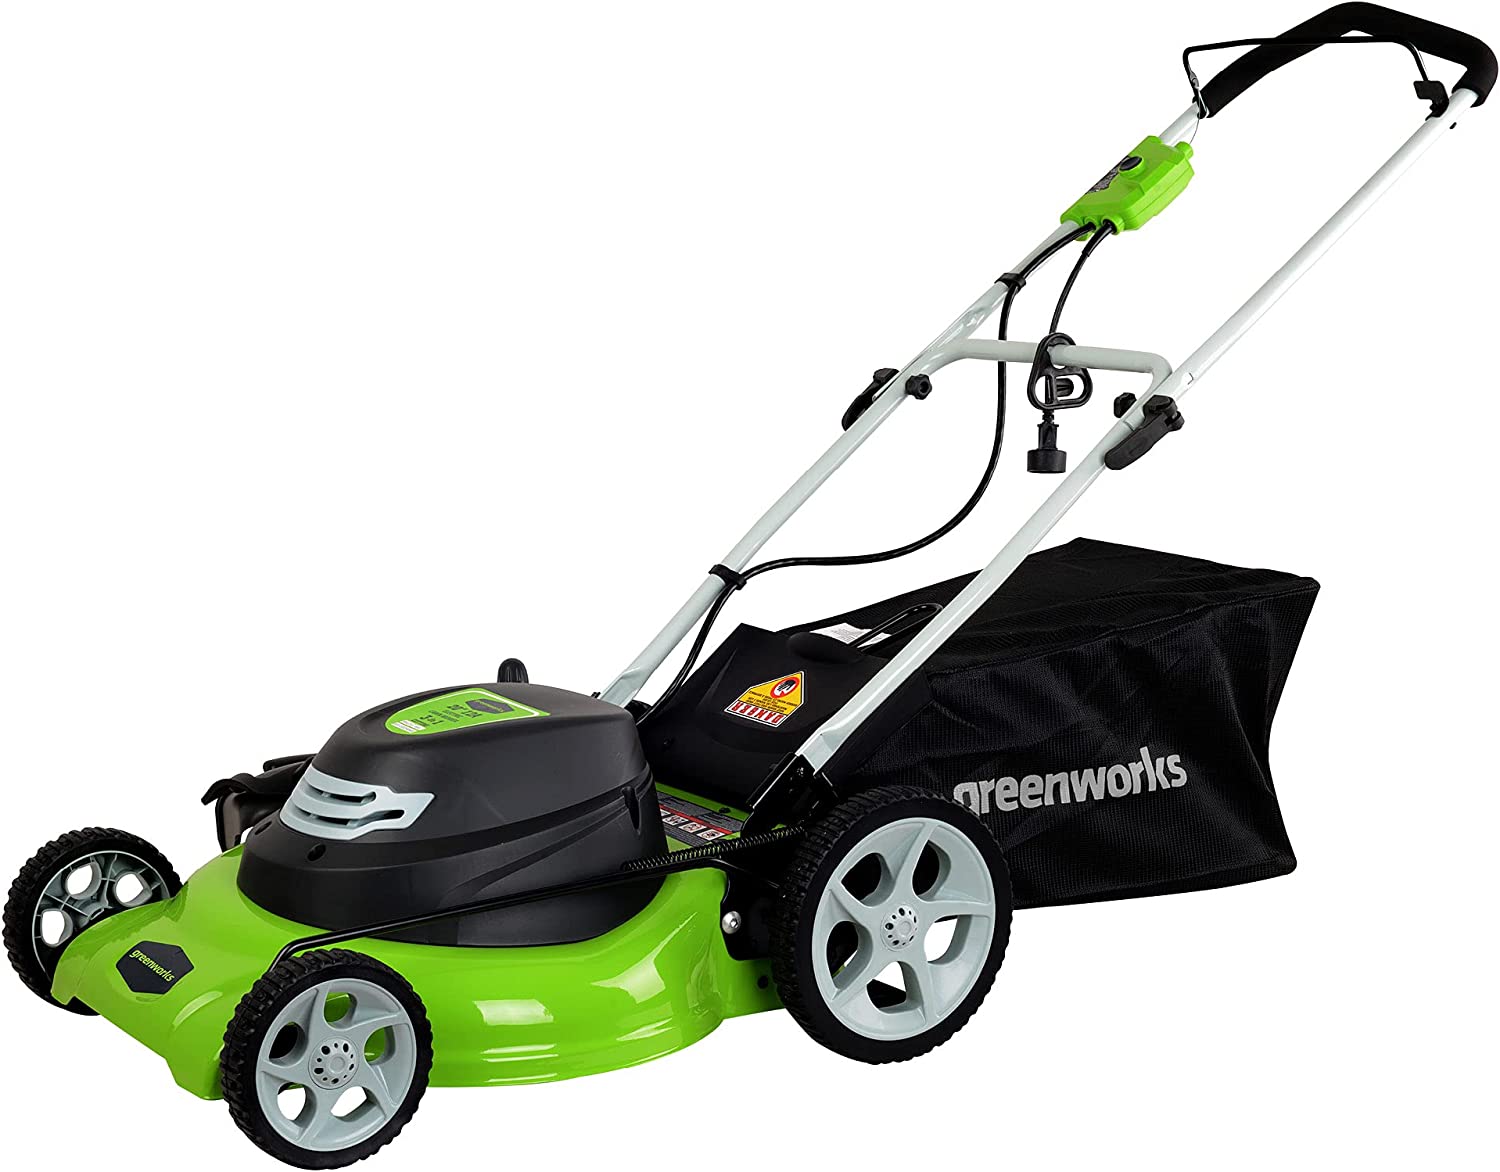 Greenworks Long-Lasting Self-Propelled Lawn Mower, 20-Inch